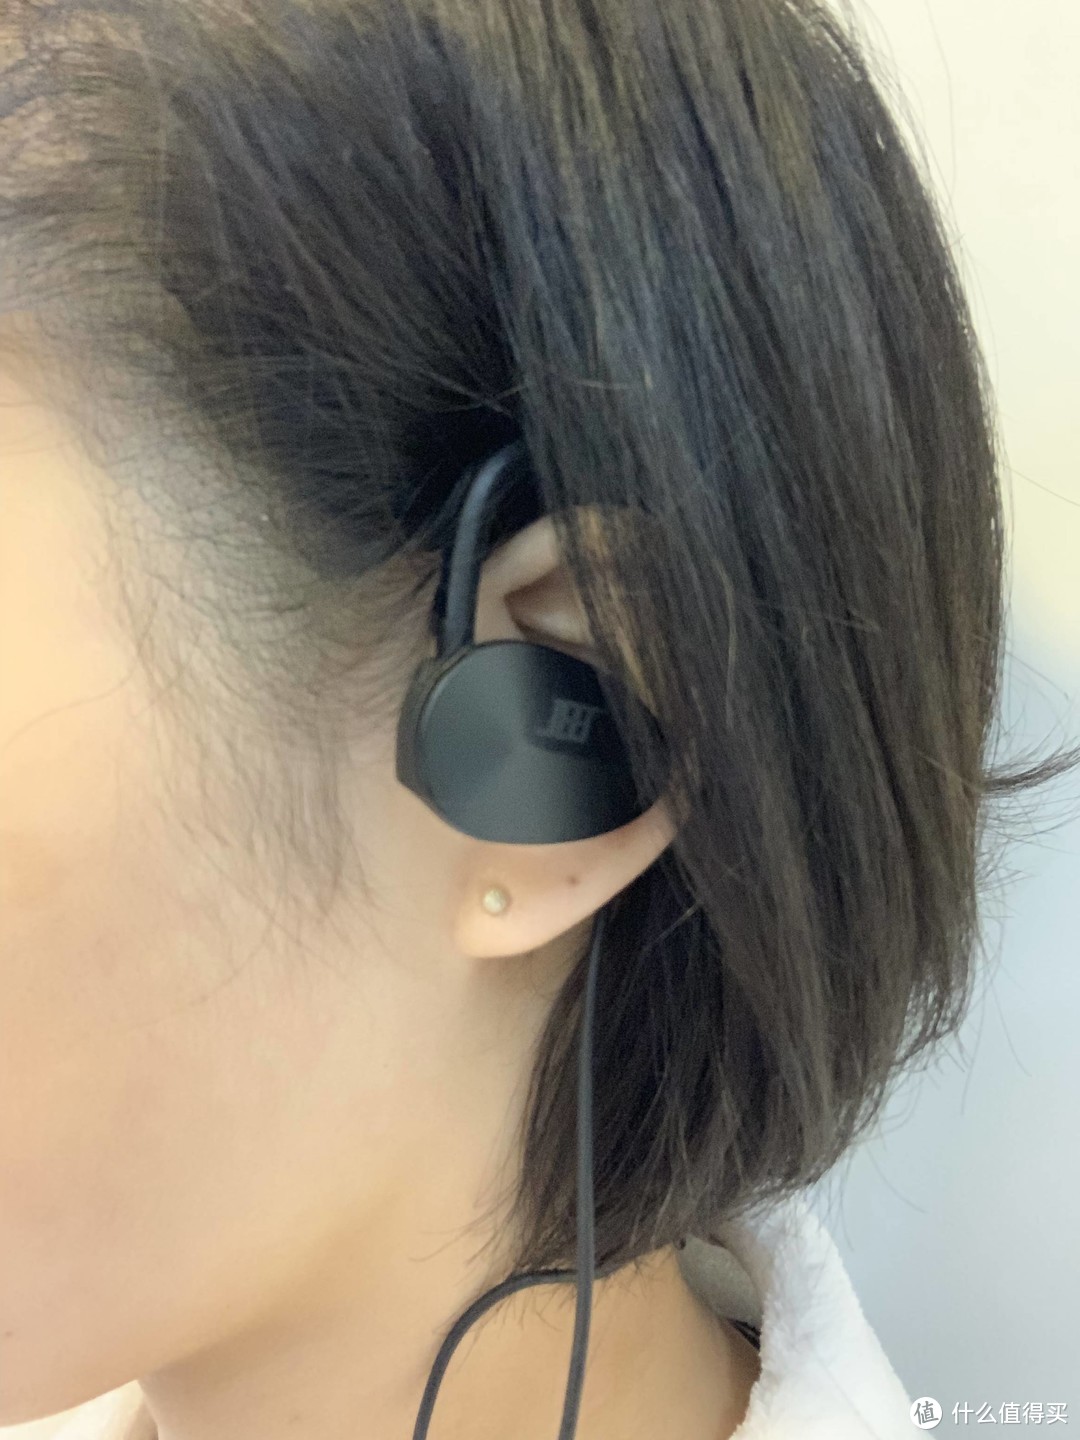 意外之喜——JEET X 勇士限量版蓝牙耳机使用小结